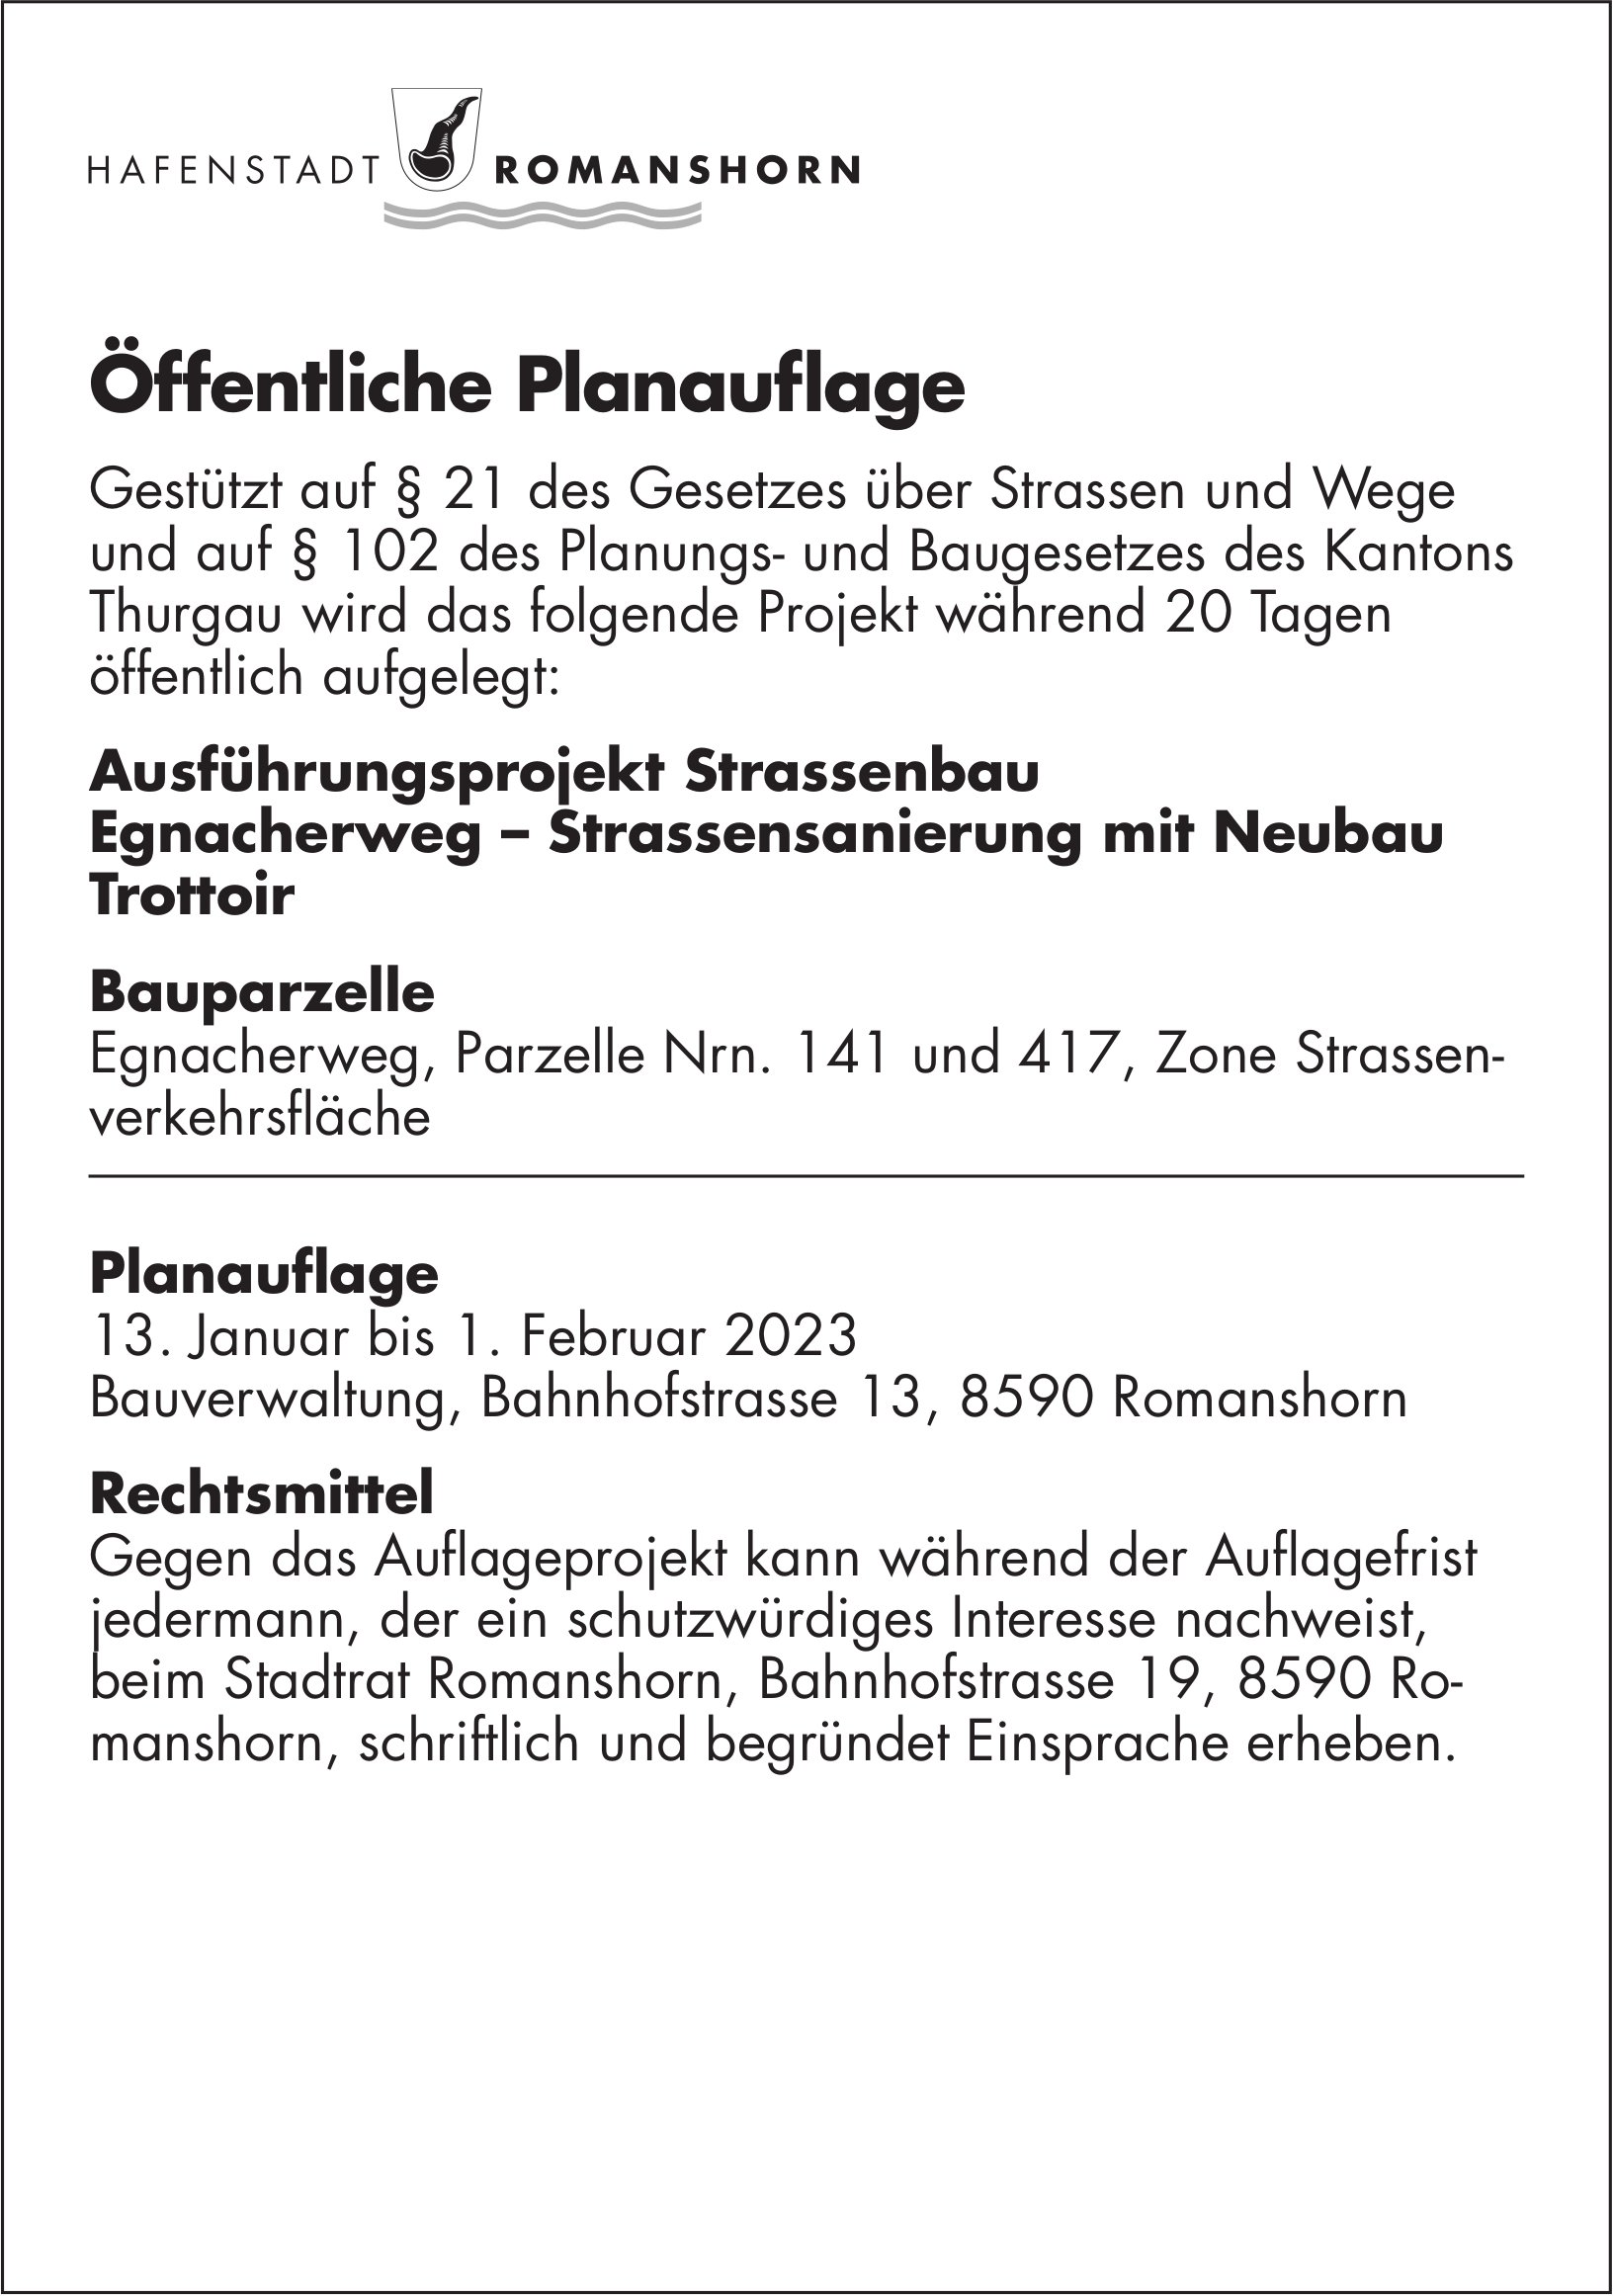 Hafenstadt Romanshorn, Öffentliche Planauflage vom 13. Januar 2023